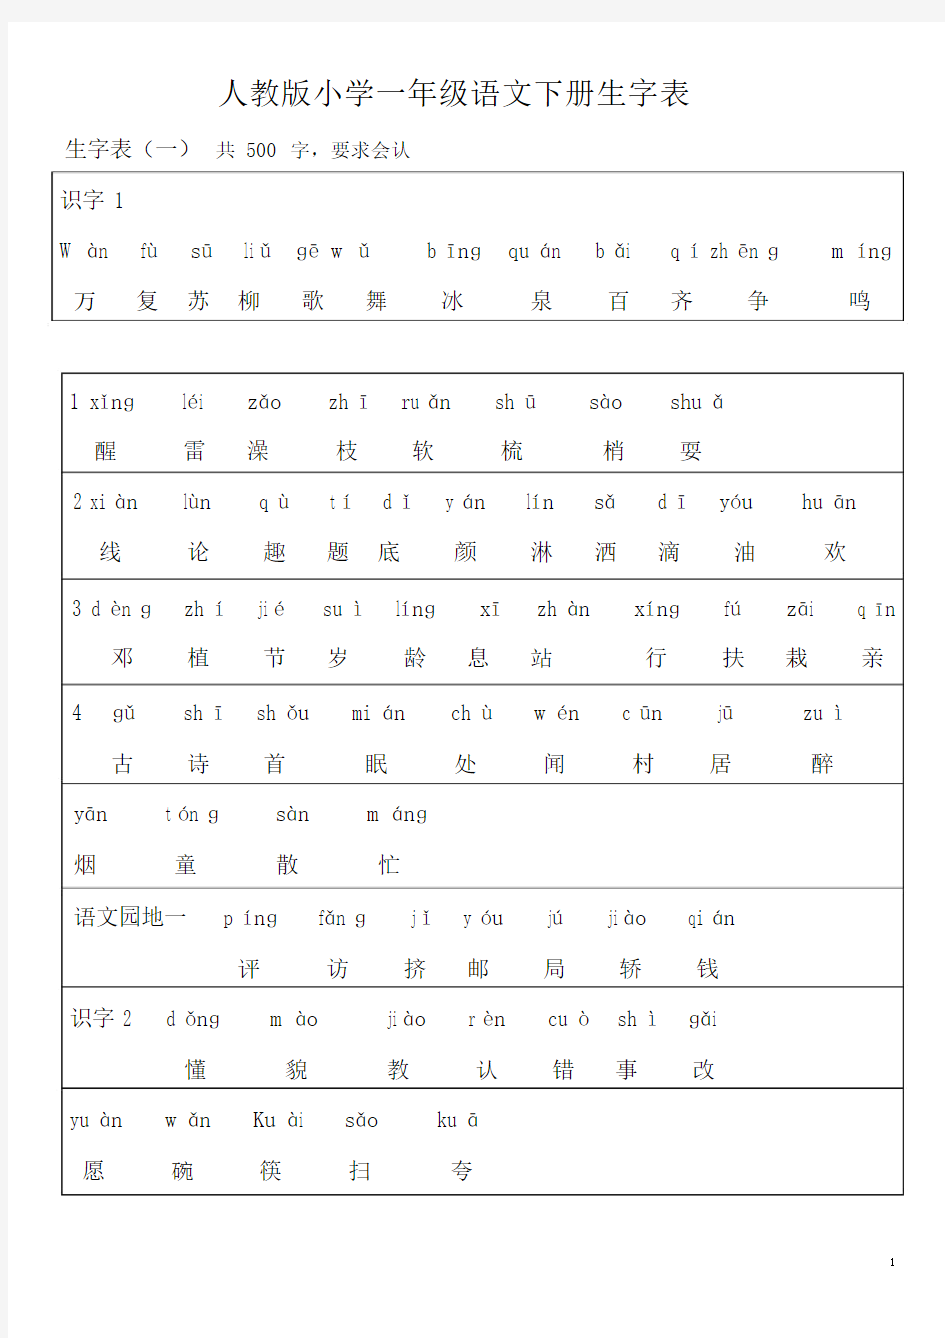 人教版一年级语文下册(所有生字表带拼音和汉字)